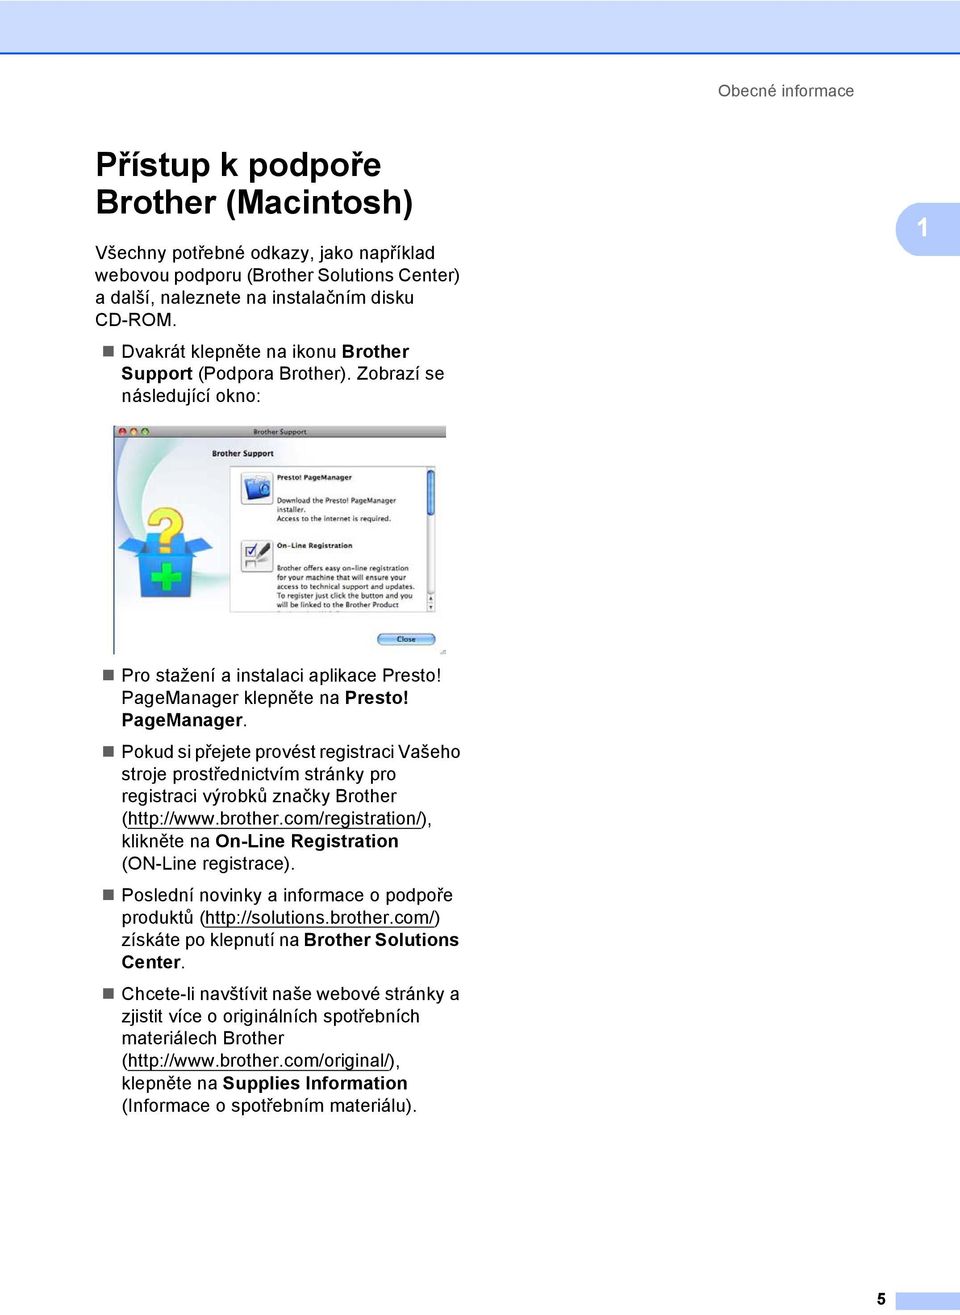 klepněte na Presto! PageManager. Pokud si přejete provést registraci Vašeho stroje prostřednictvím stránky pro registraci výrobků značky Brother (http://www.brother.